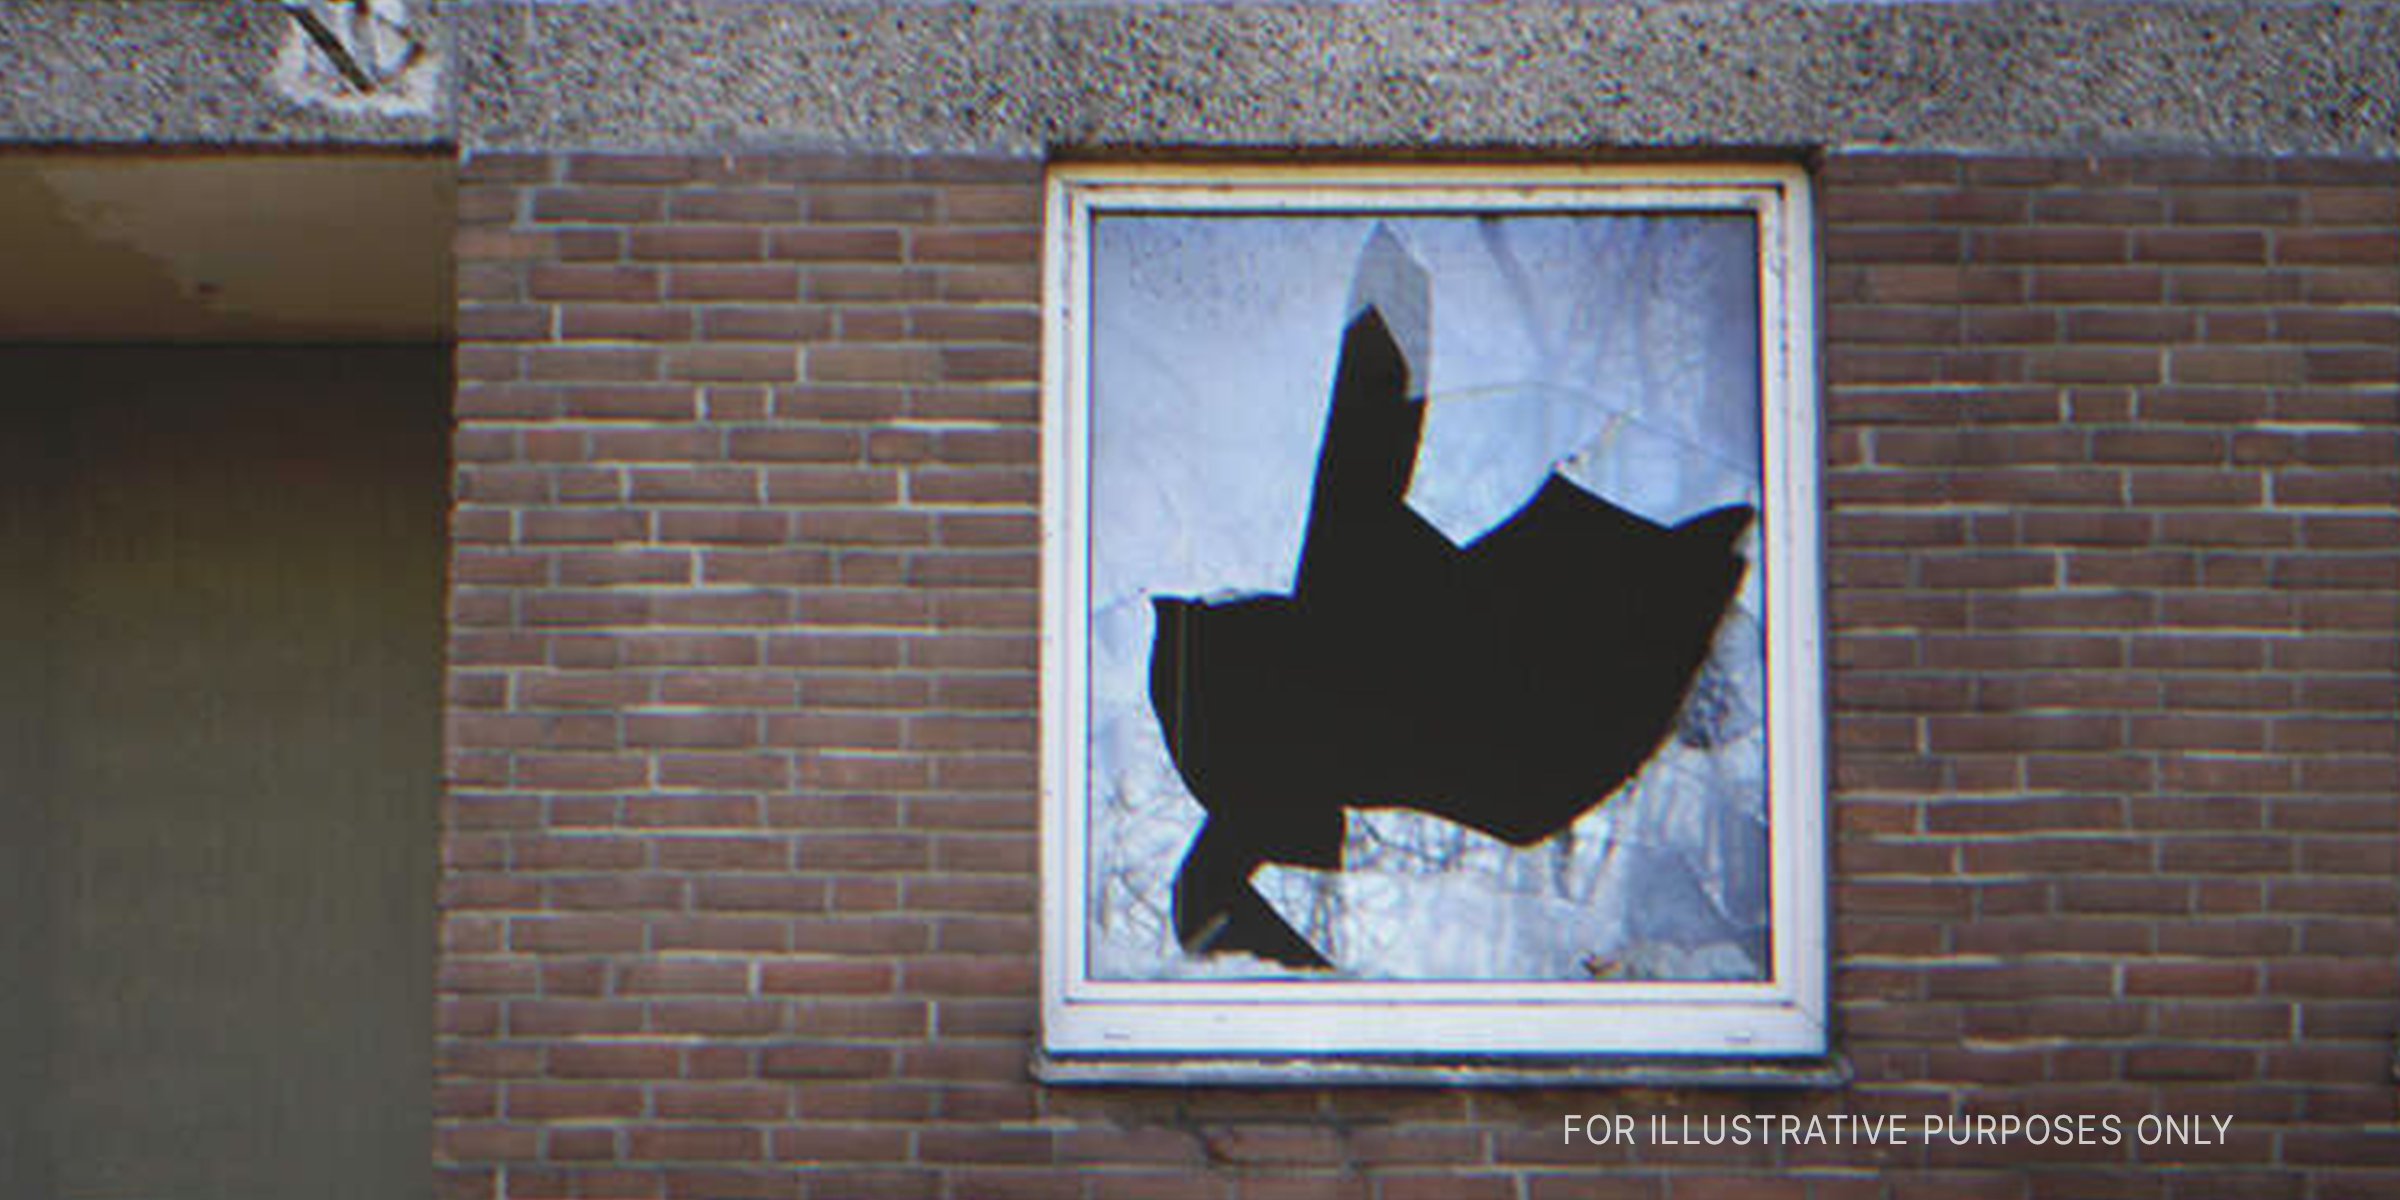 Broken house window. | Source: Getty Images